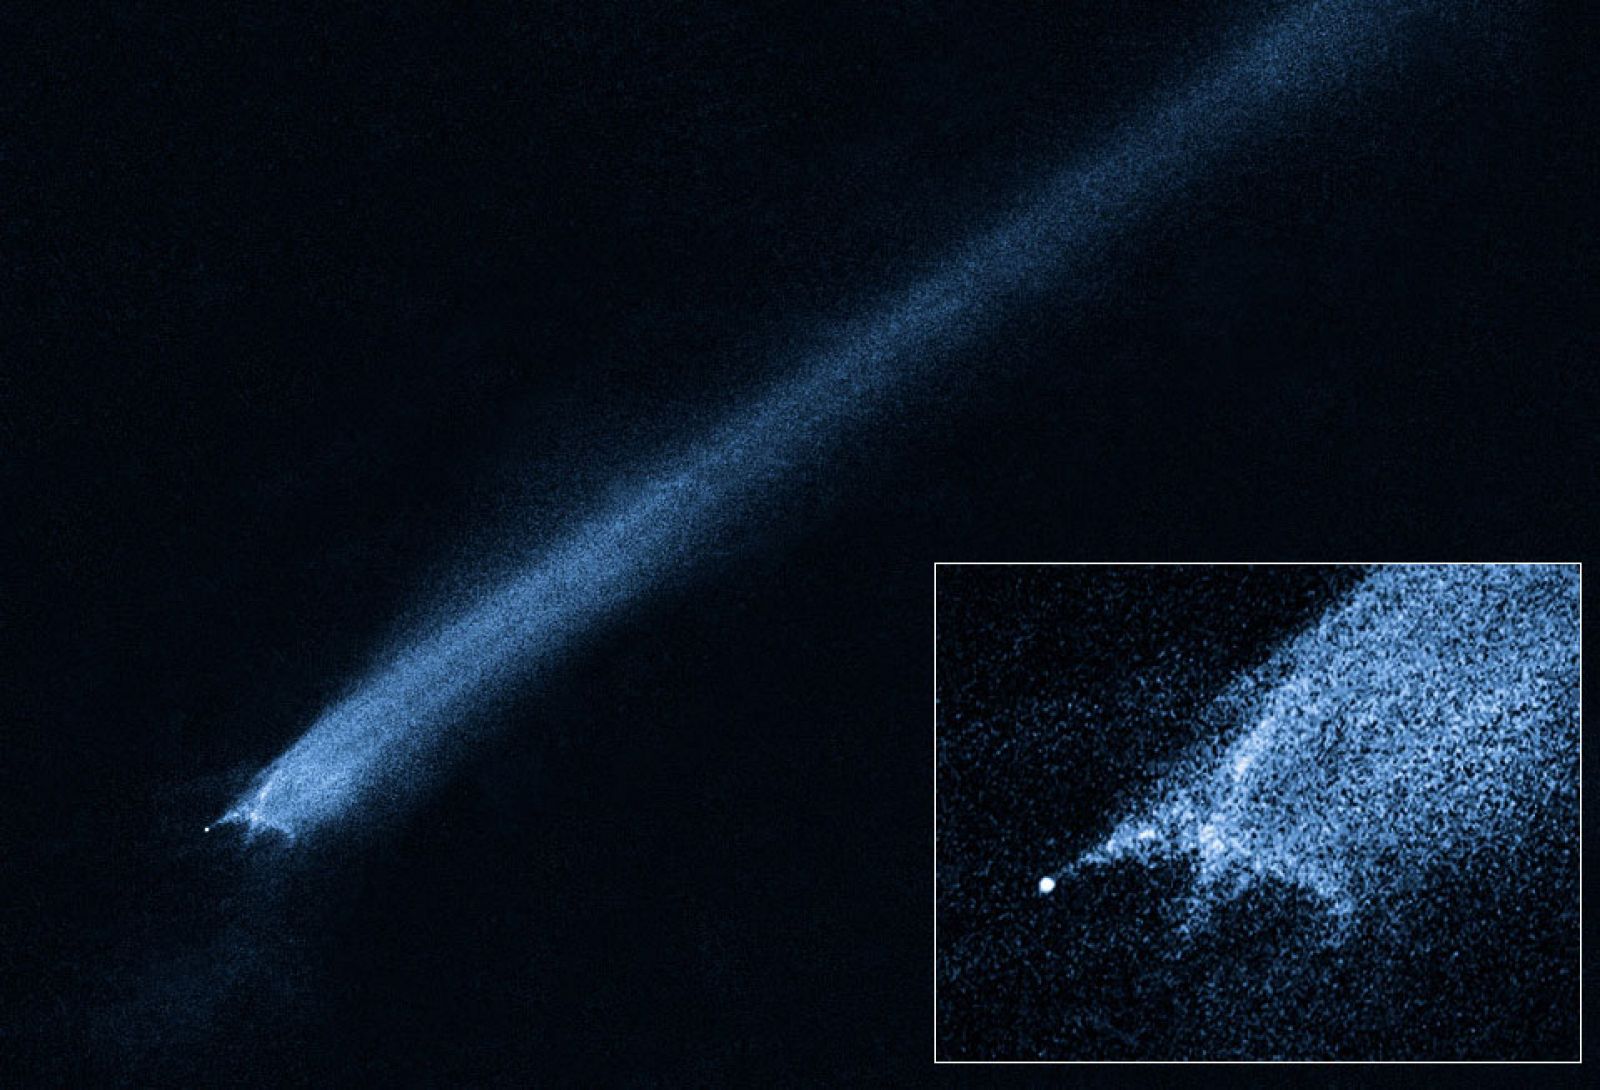 El telescopio espacial Hubble ha detectado una misteriosa estela de escombros cósmicos que sugieren una colisión frontal de un asteroide con otro cuerpo. El impacto de los asteroides ocurrió a una velocidad de casi 20.000 kilómetros por hora.